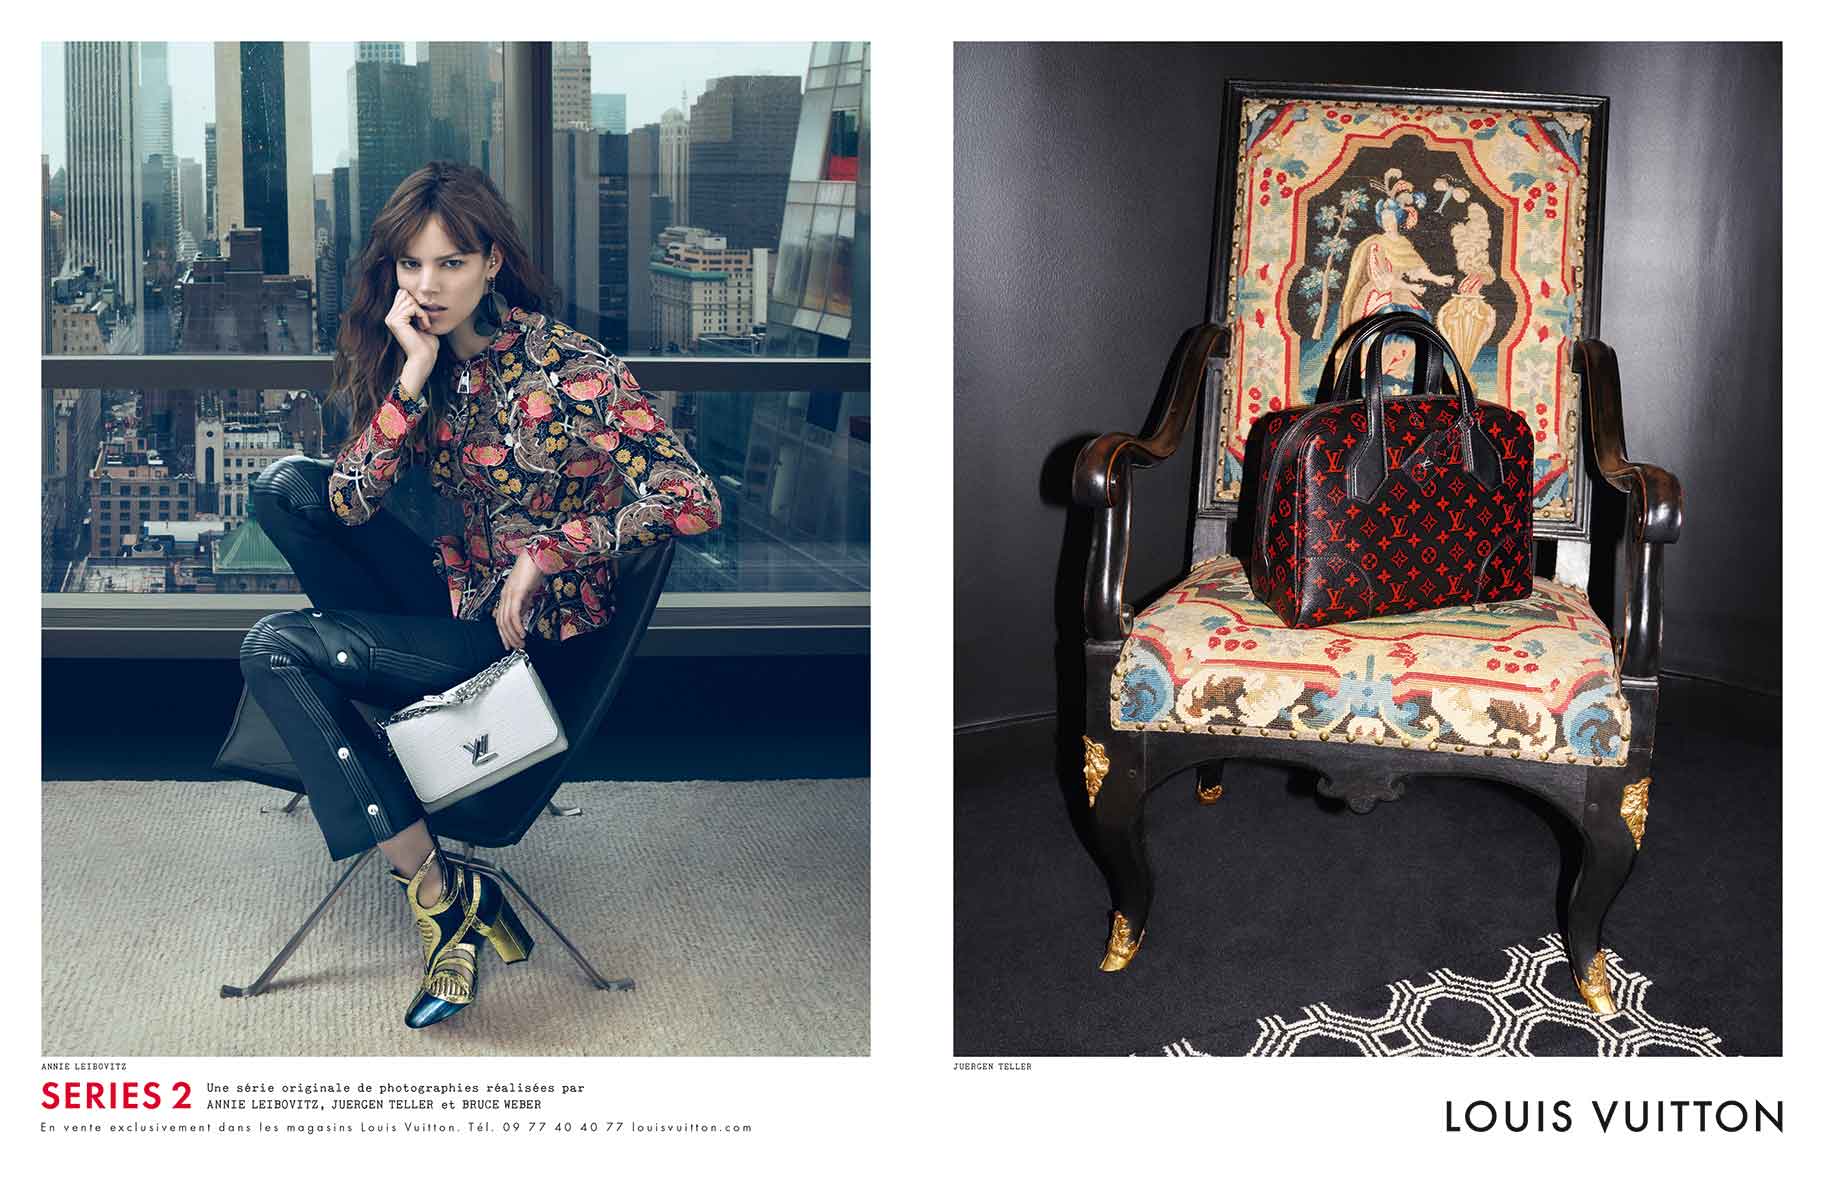 Louis Vuitton unveils new campaign &quot;Series 2&quot;